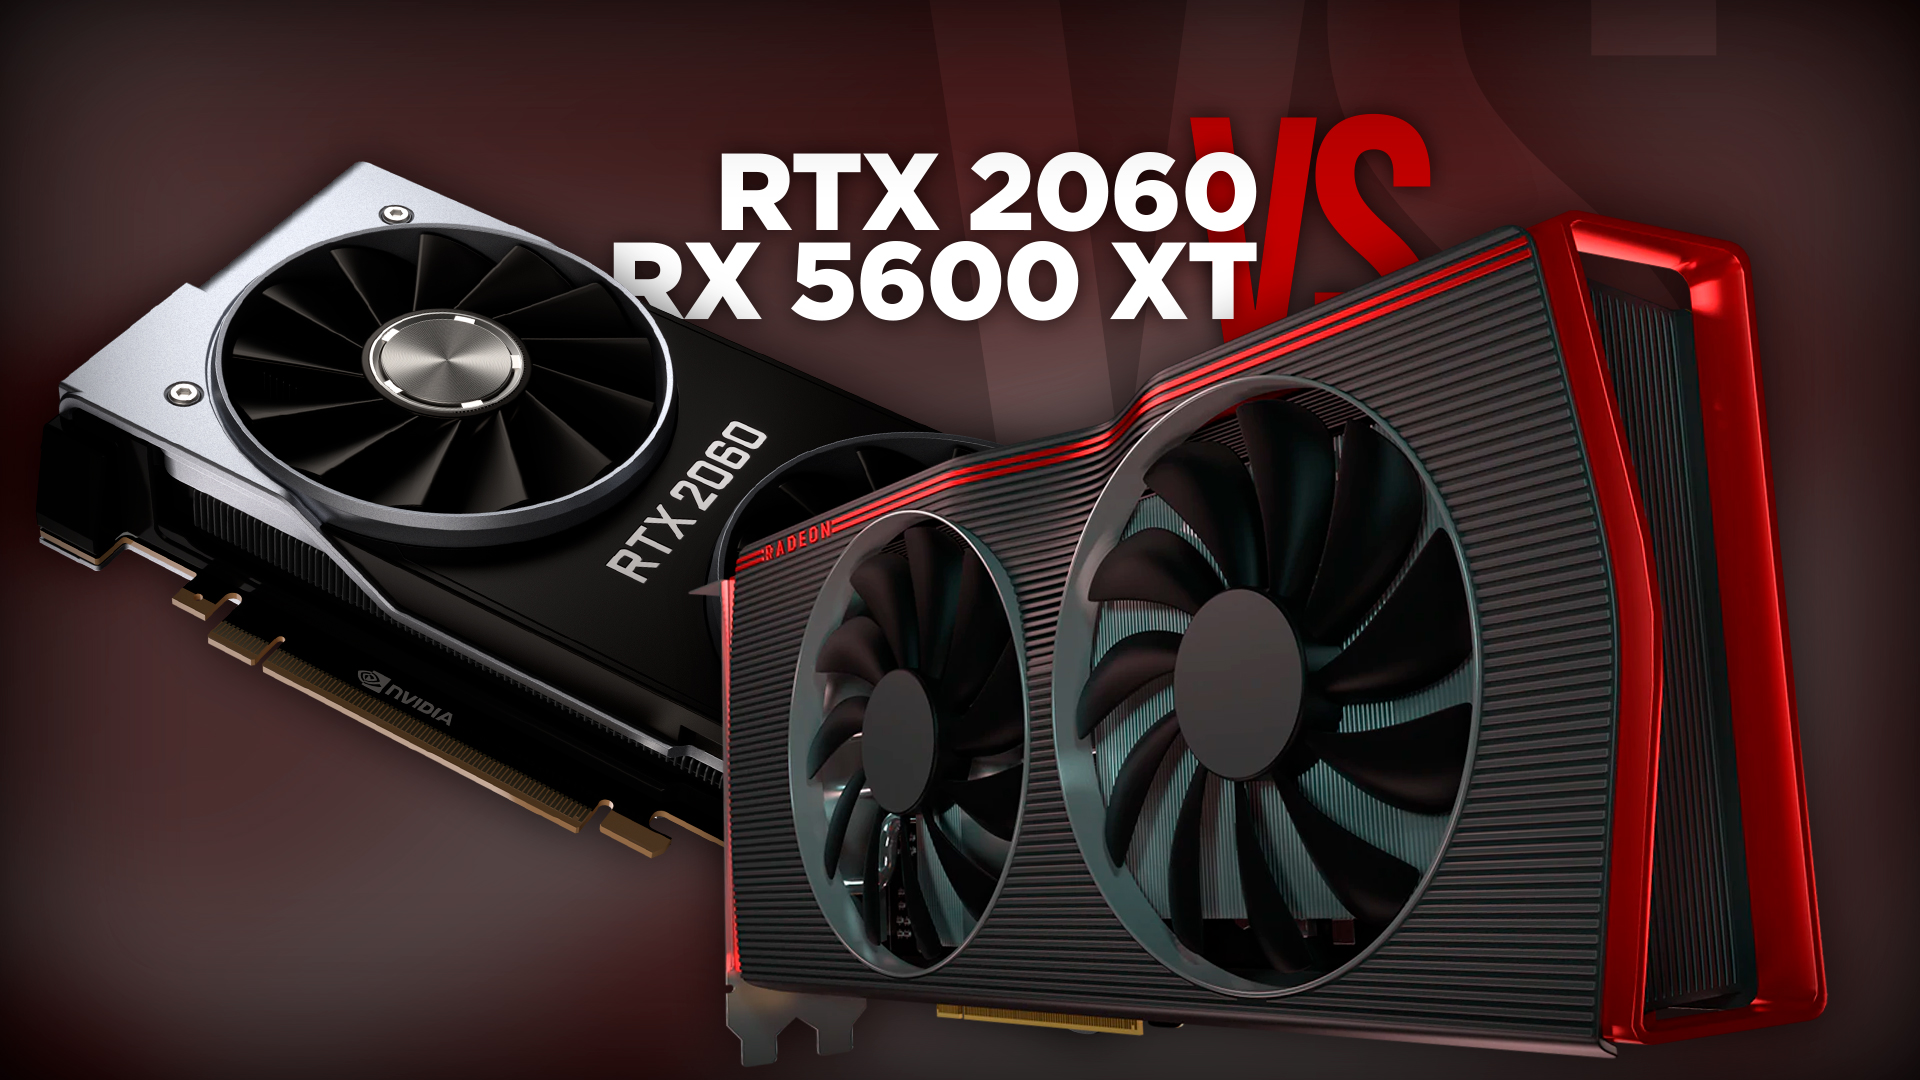 Amd Radeon Rx 5600 Xt Vs. Nvidia Geforce Rtx 2060